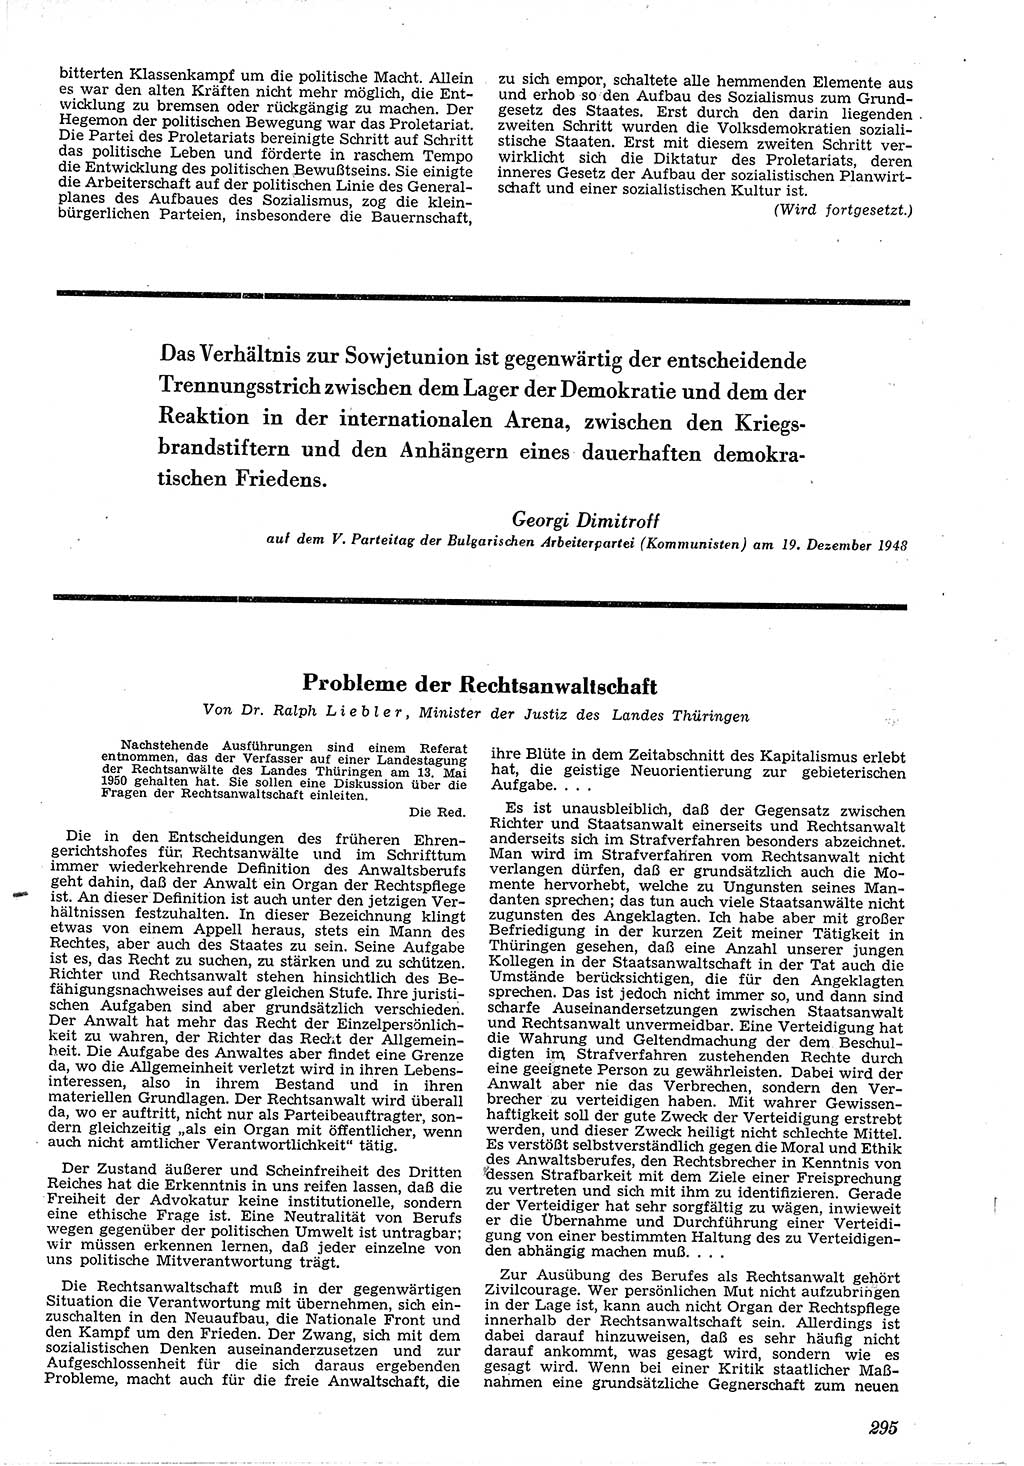 Neue Justiz (NJ), Zeitschrift für Recht und Rechtswissenschaft [Deutsche Demokratische Republik (DDR)], 4. Jahrgang 1950, Seite 295 (NJ DDR 1950, S. 295)